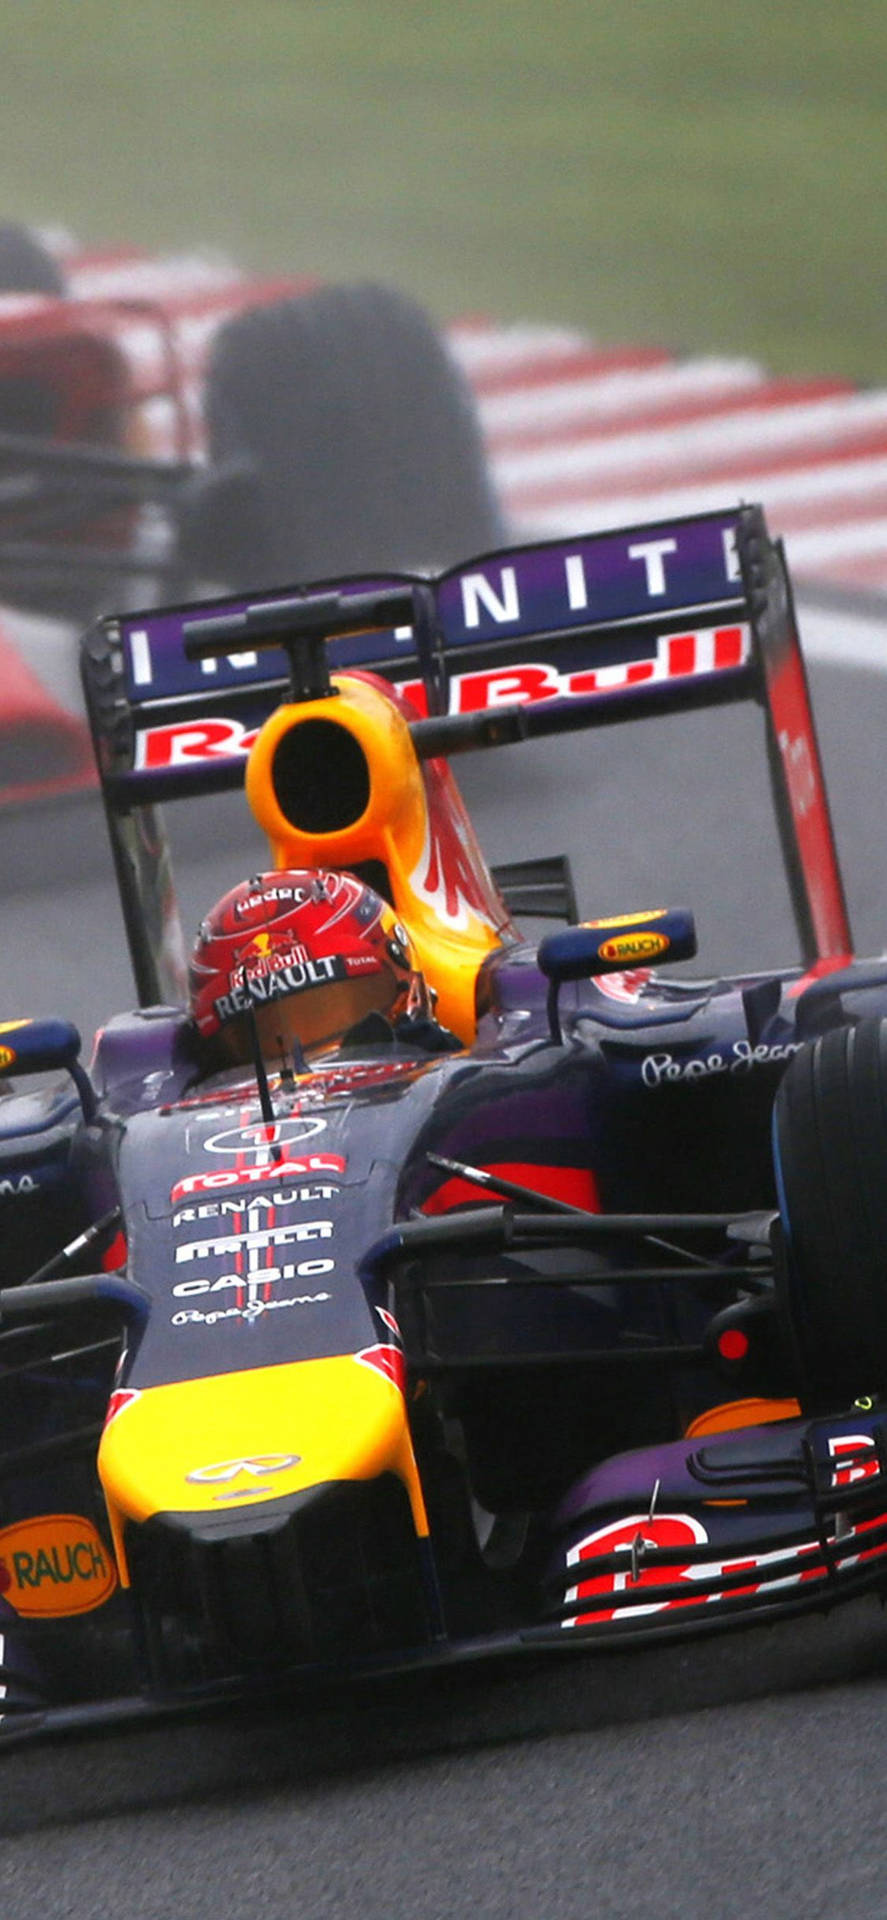 F1 Daniel Ricciardo Racing Iphone